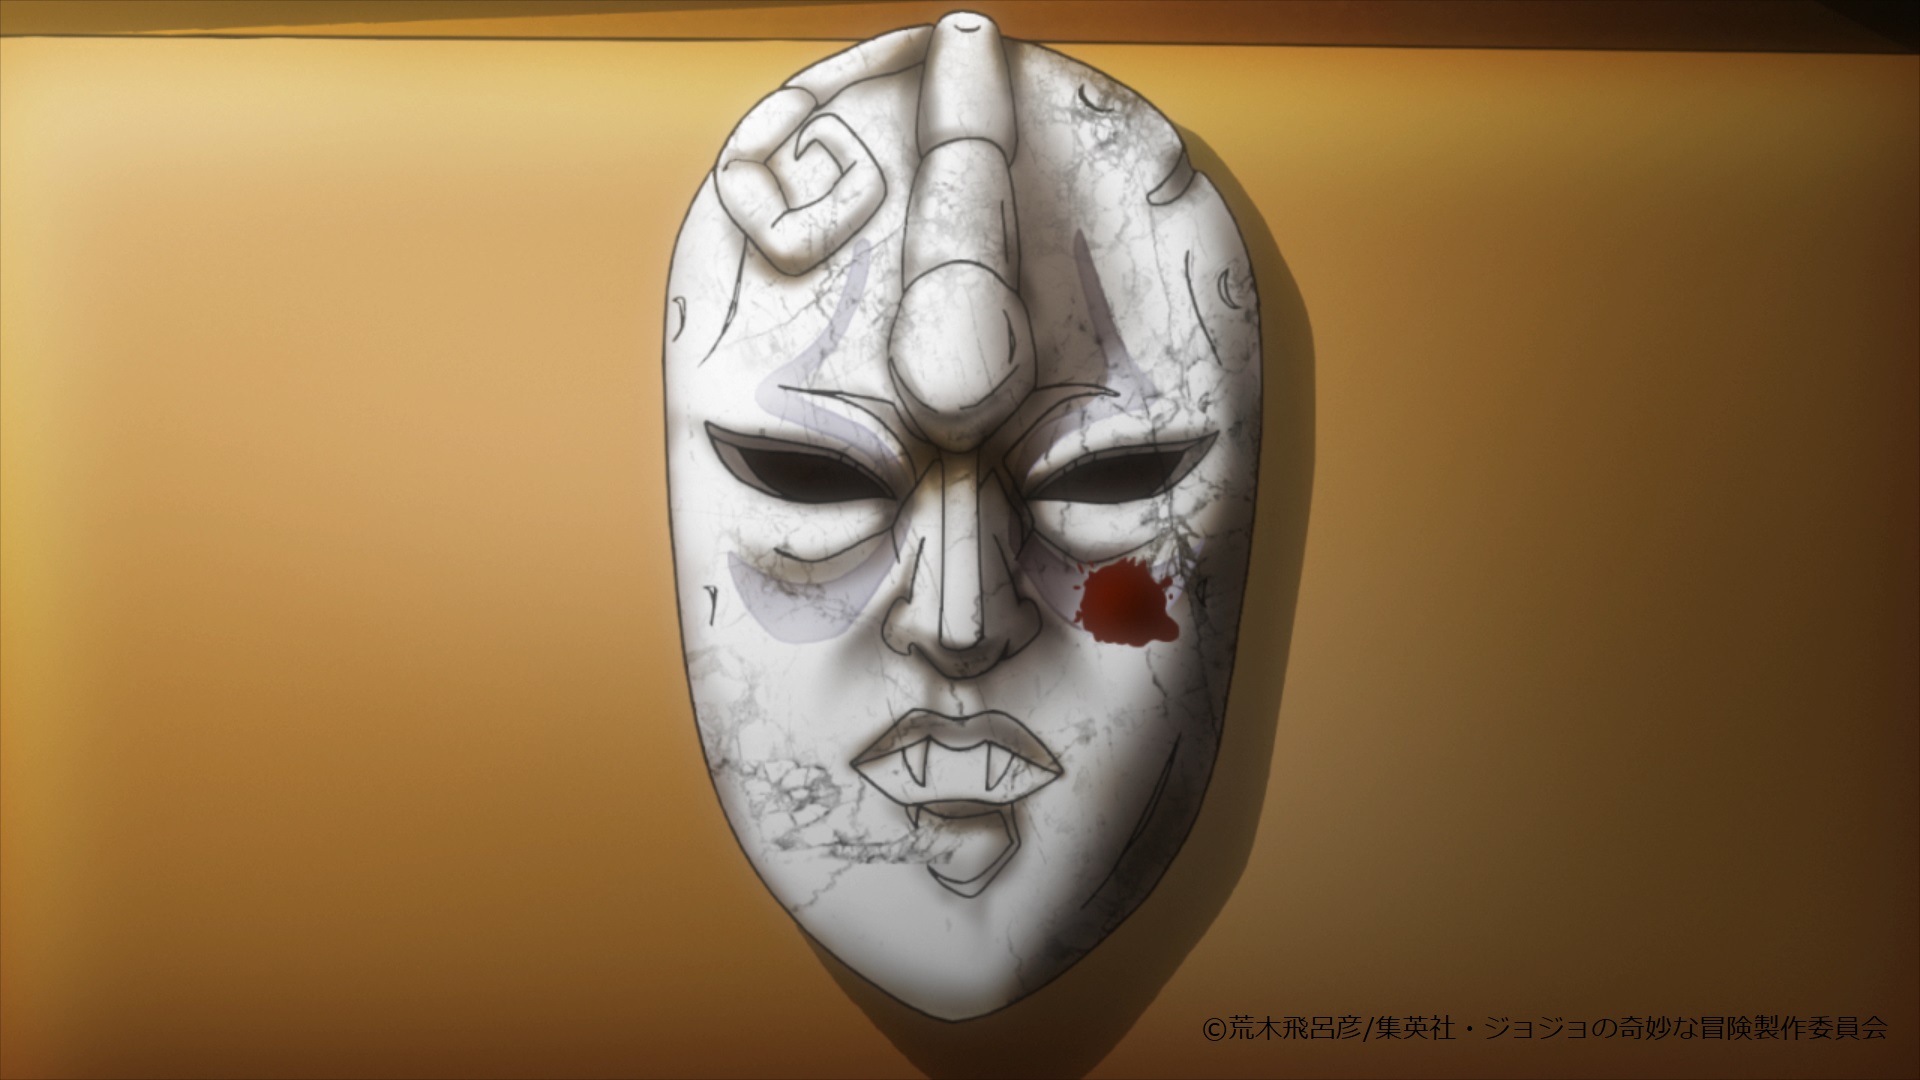 Warner Bros Japan Anime おはようございます 今日は いい石の日 だそうですが この石仮面を見つけても 決して被らないでくださいね 人間をやめることになってしまいますので Jojo Anime Wbj Anime T Co Xv3zff5de8 Twitter